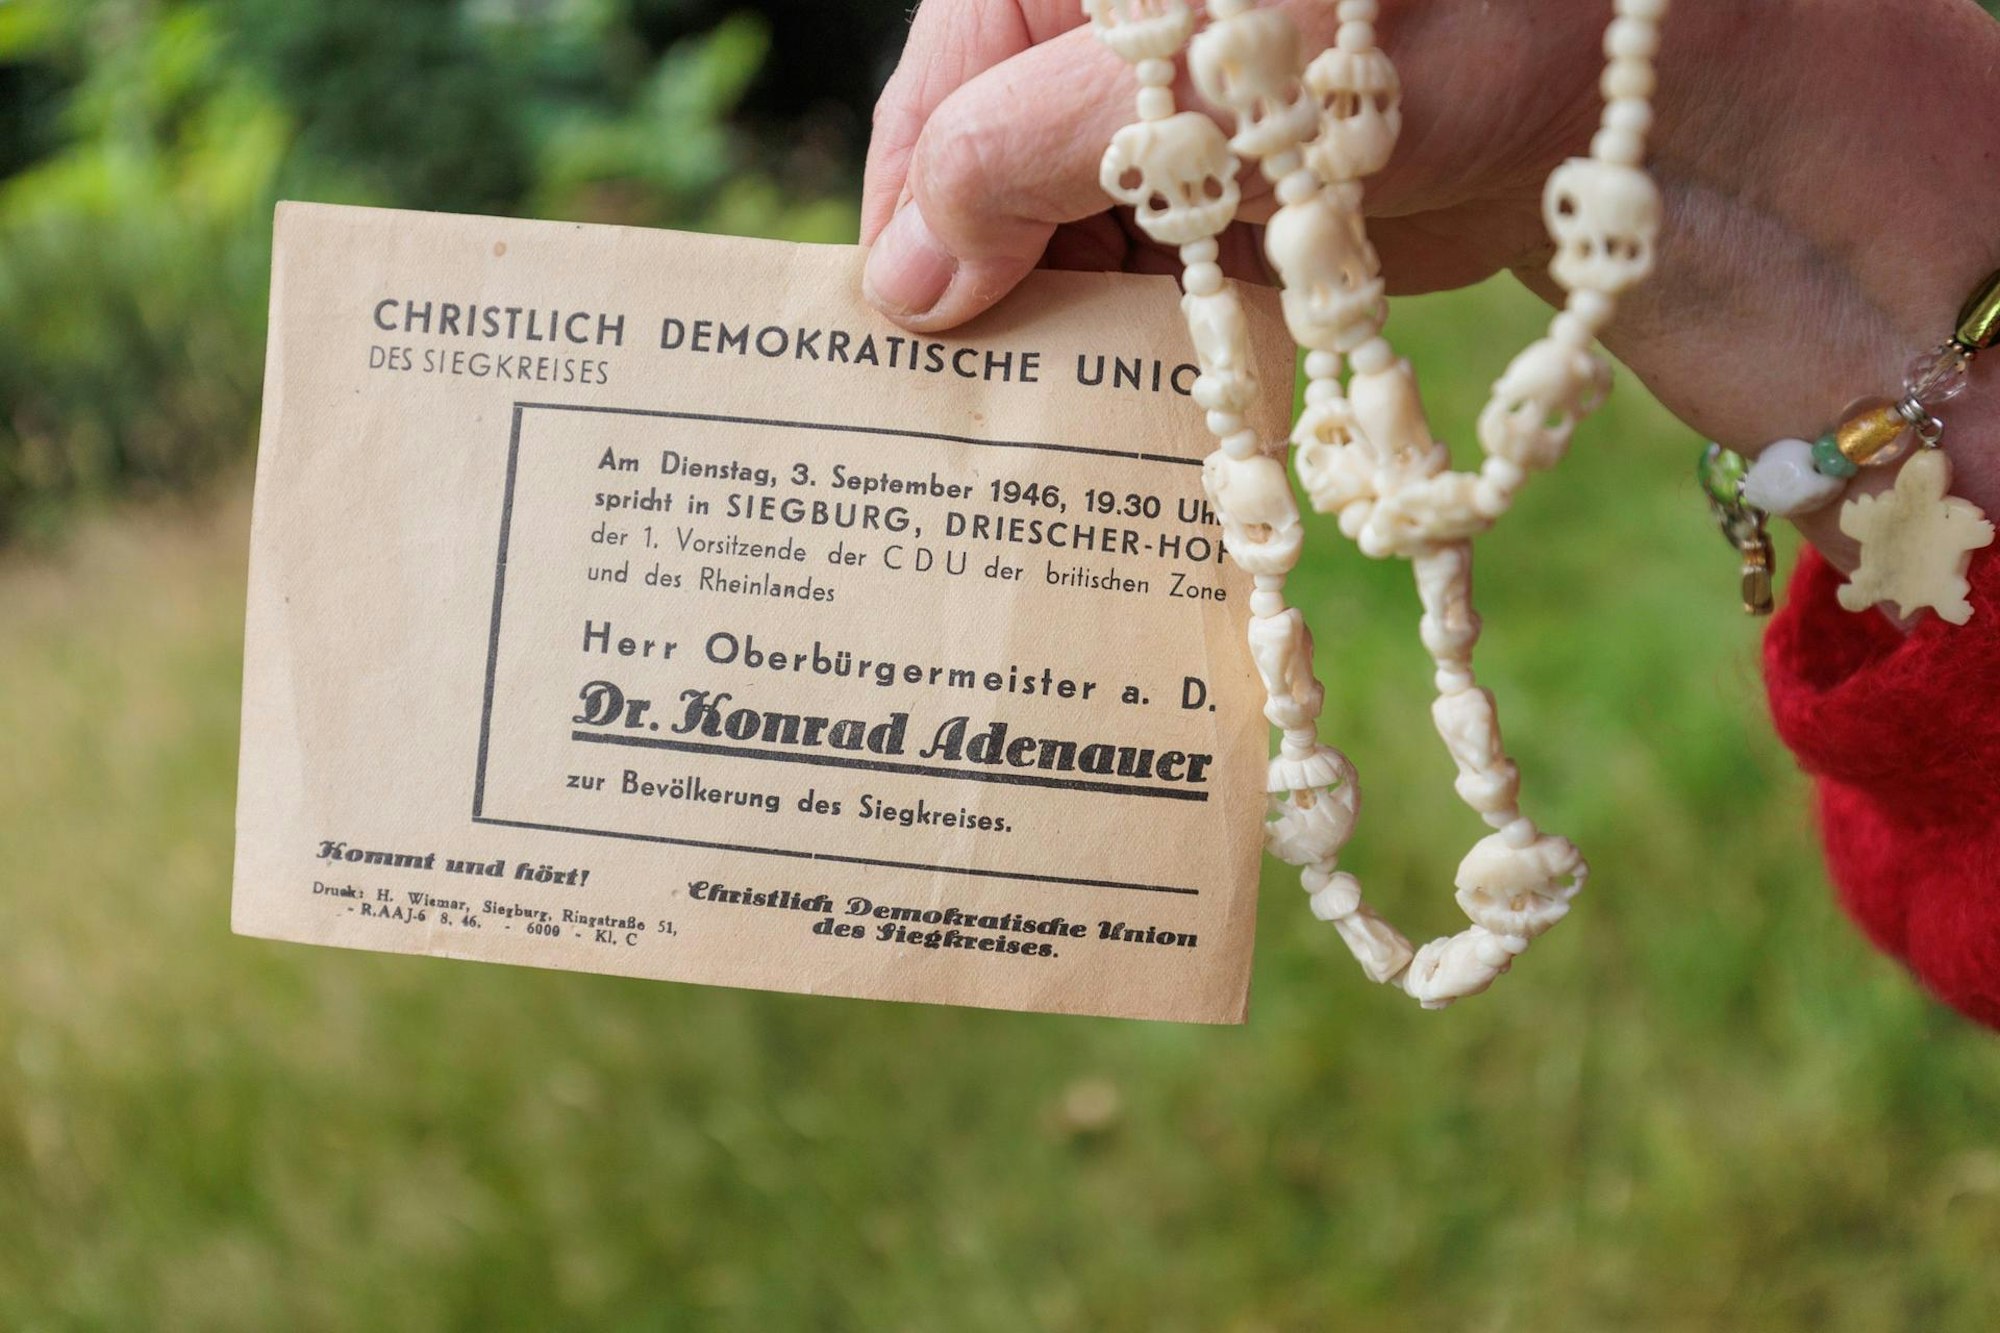 Die ihr von Dr. Konrad Adenauer geschenkte Elfenbeinkette hatte Cäcilie Kinting zuletzt bei dessen Staatsbegräbnis getragen.